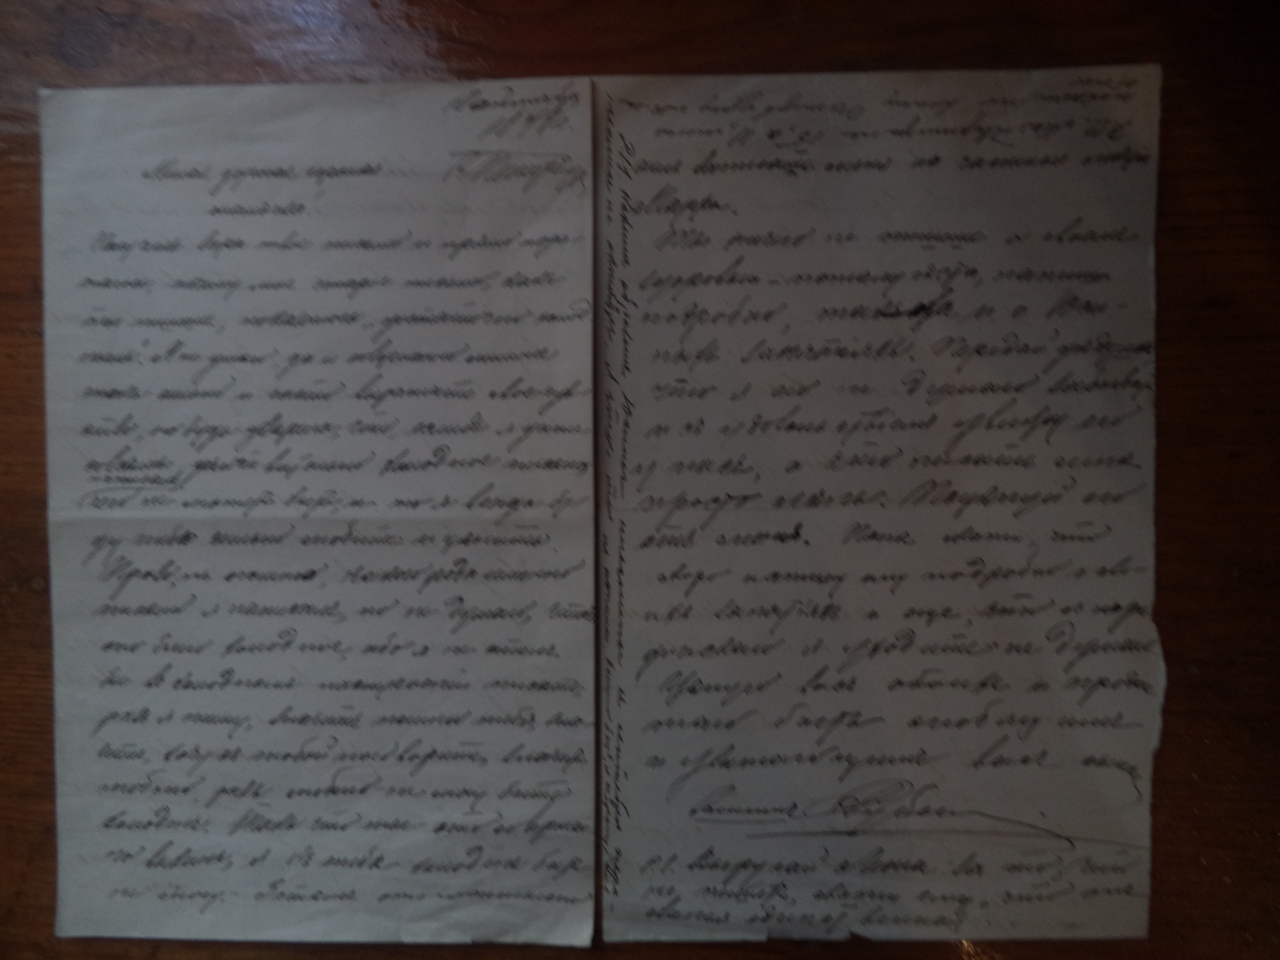 Ռուբեն  Օրբելու նամակը ուղղված մորը՝ Վարվառա Օրբելուն